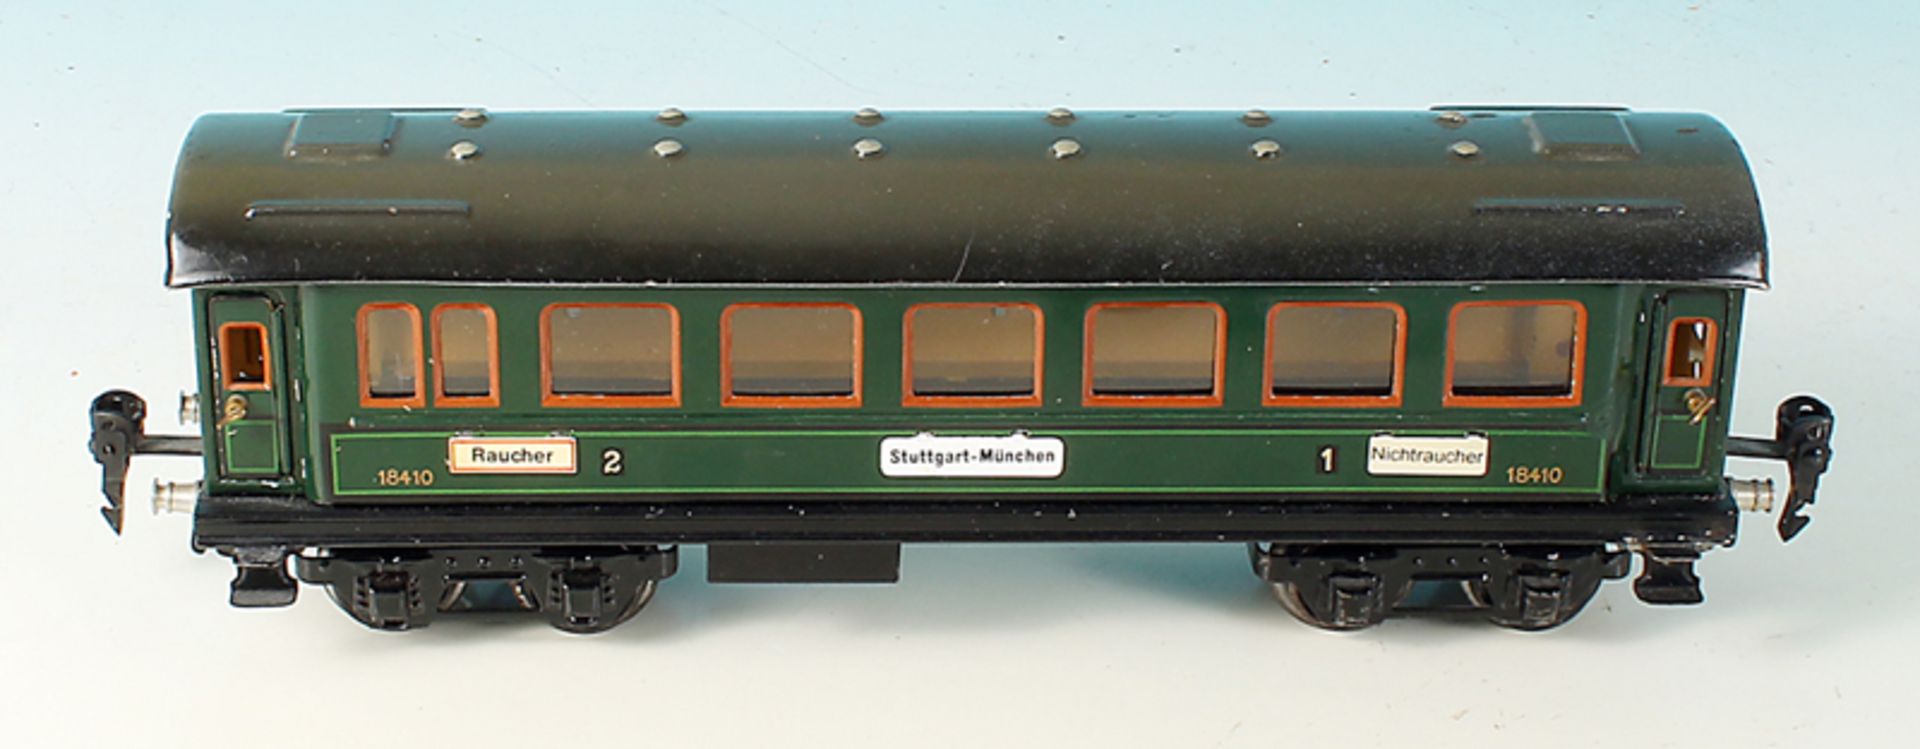 MÄRKLIN Personenwagen 1841/0 -  Spur 0